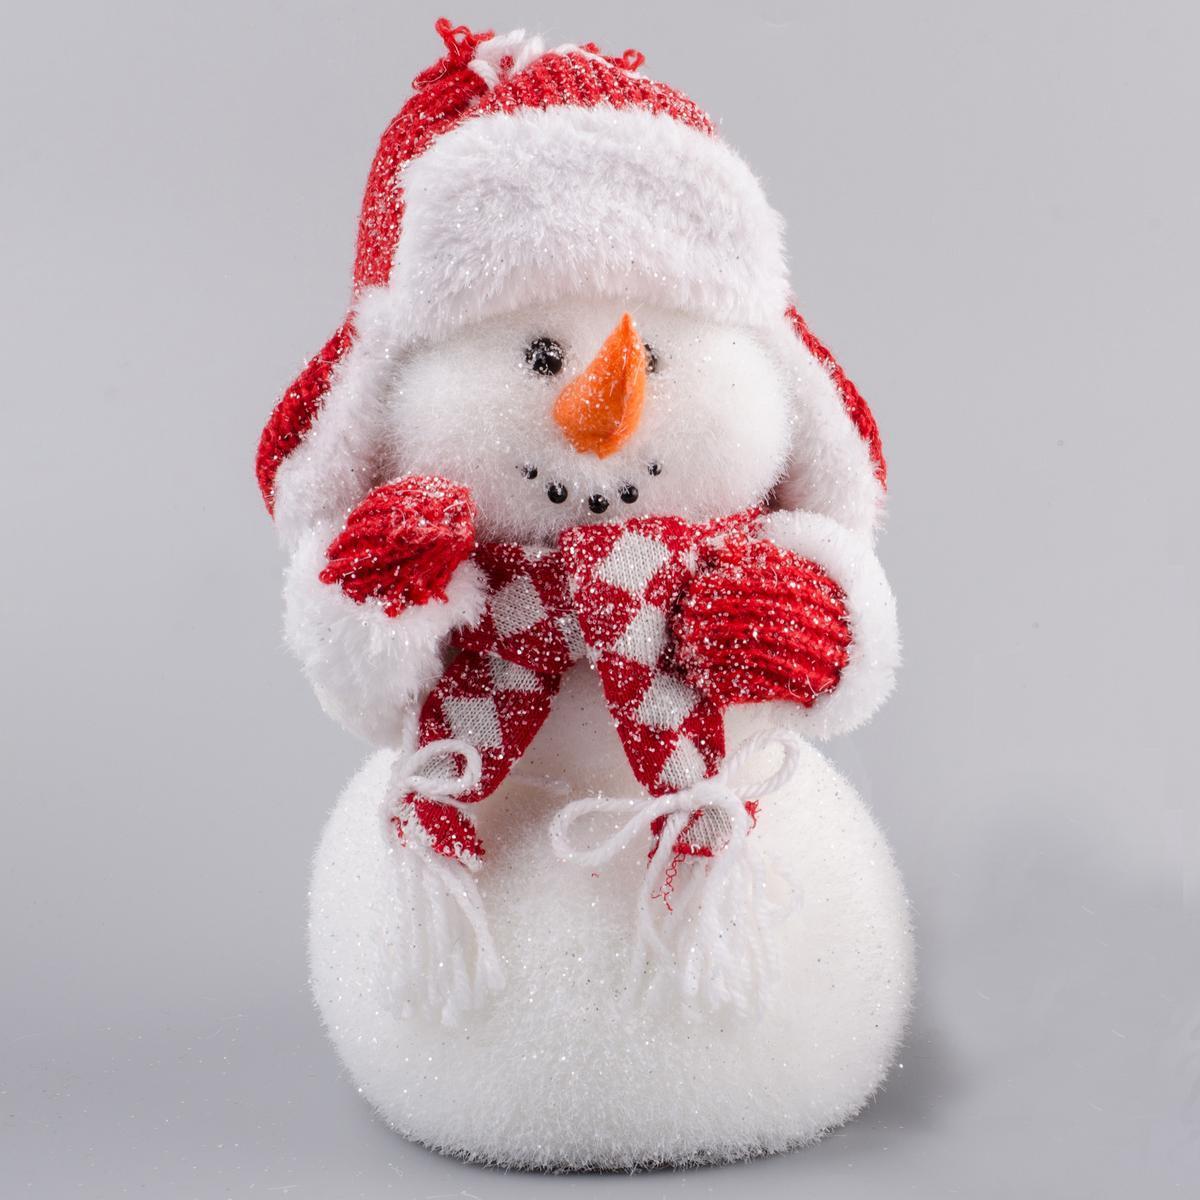 Bonhomme de neige avec chapeau - Polystyrène - 12 x 13 x H 24 cm - Blanc et rouge